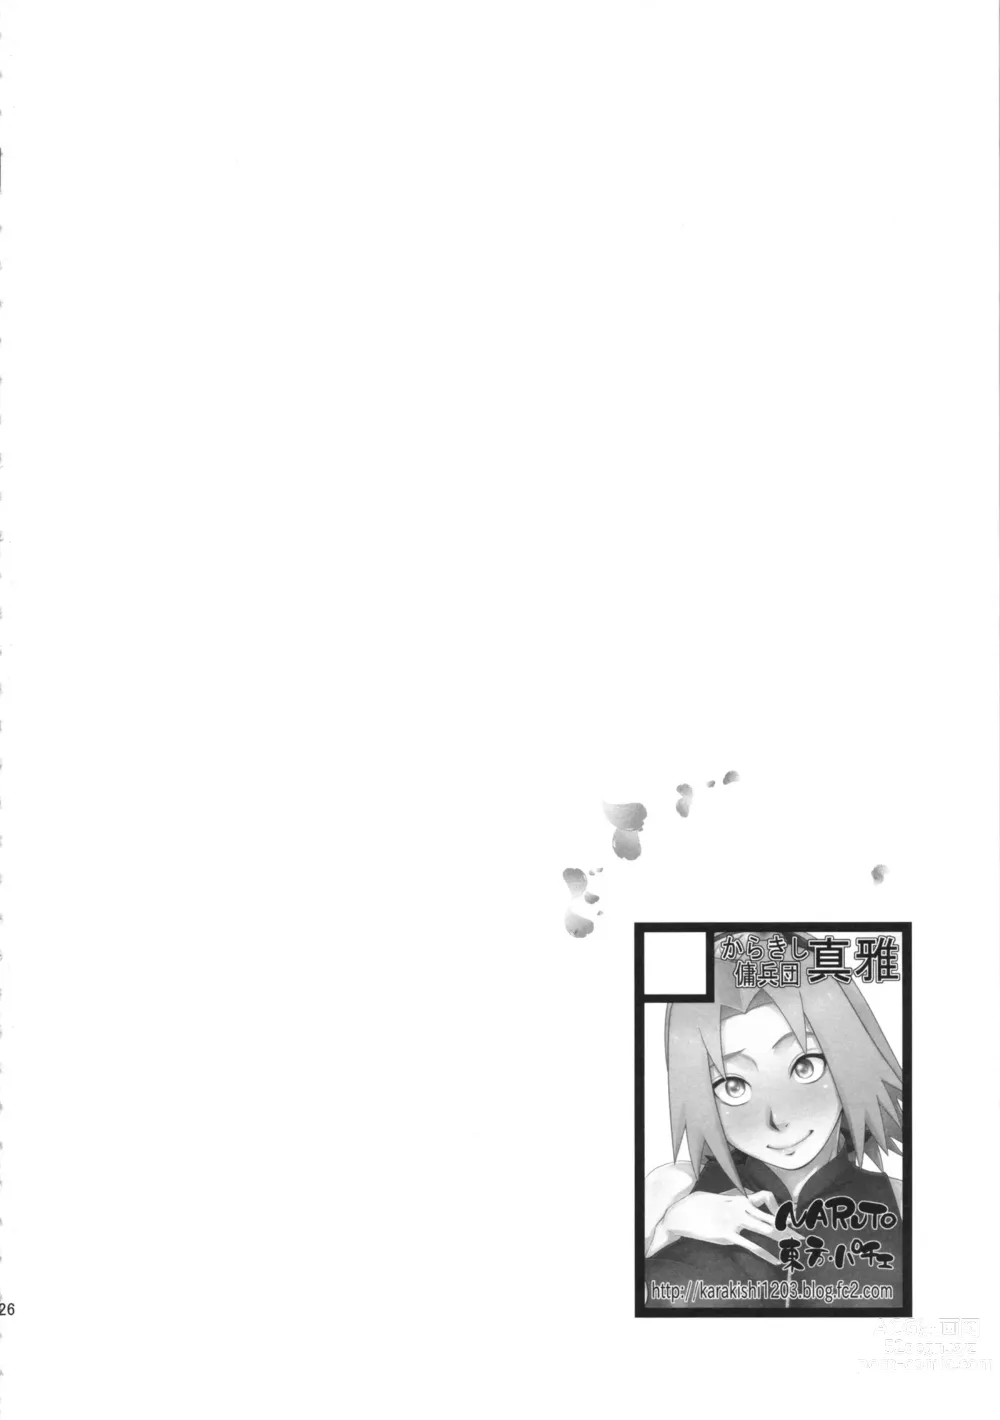 Page 26 of doujinshi Konoha-don